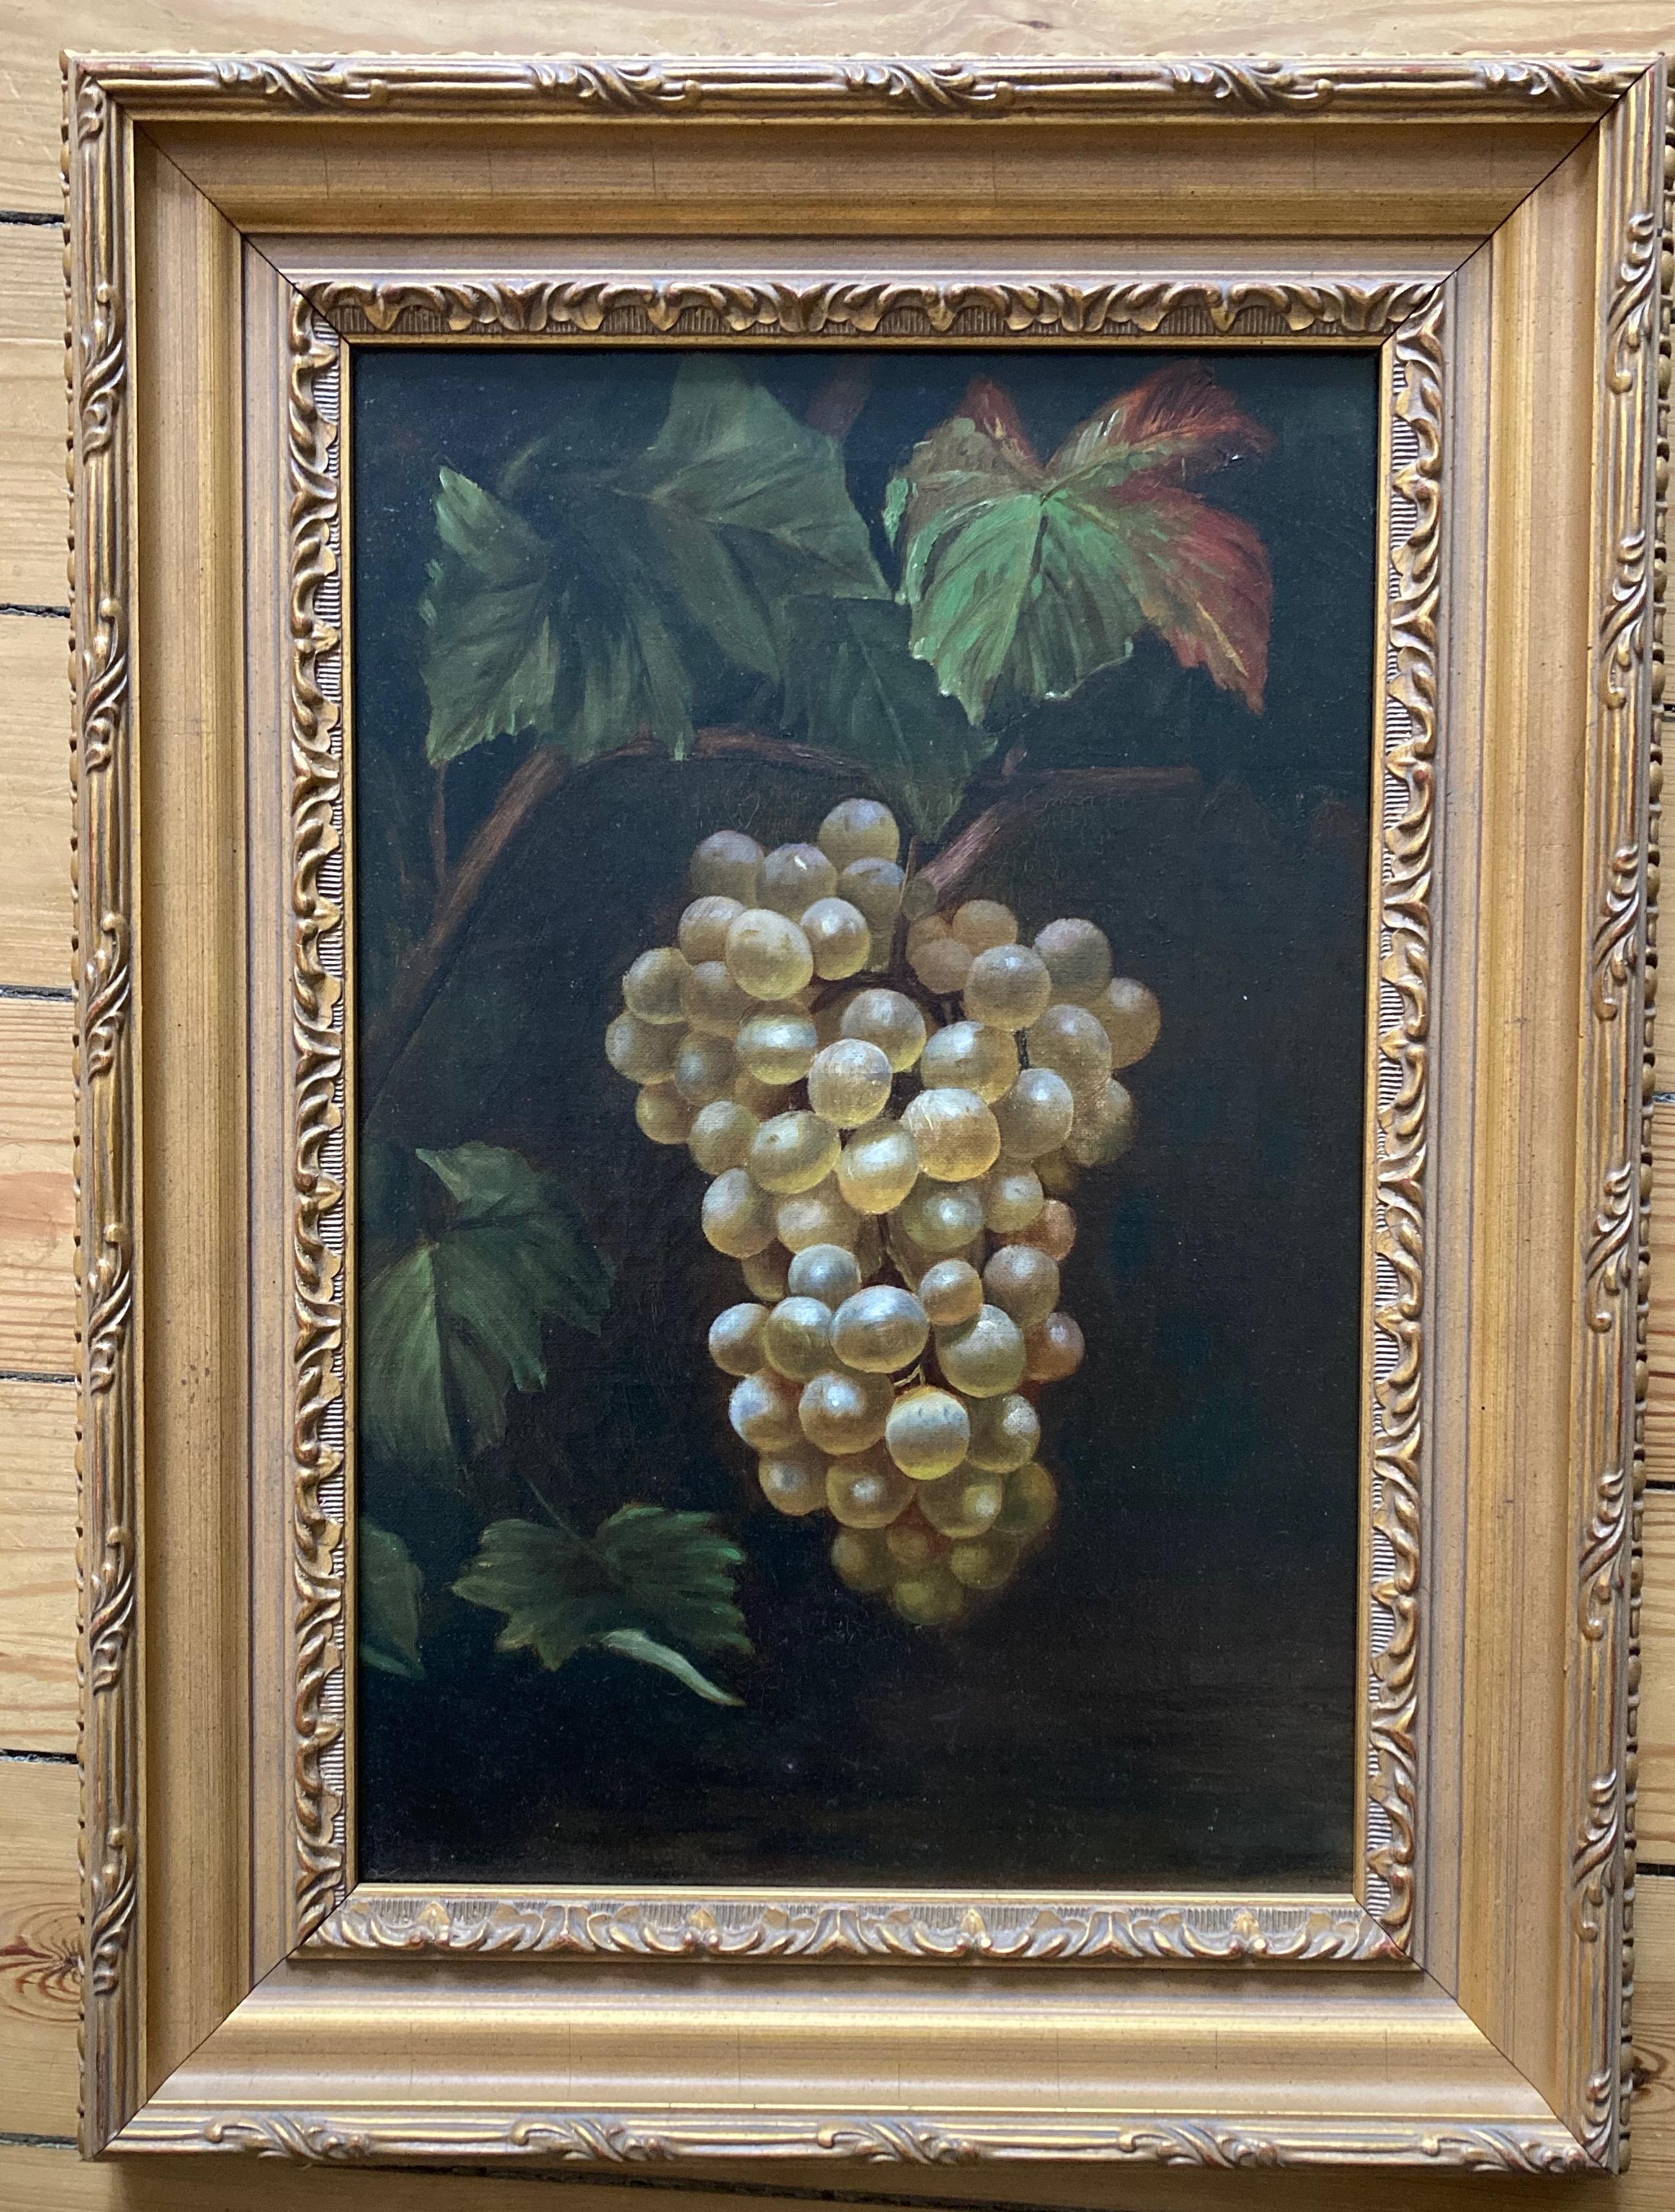 Eine wunderschön gemalte Studie von Weintrauben von einer sehr kompetenten Hand; hervorragende Details des Lichts auf den saftigen Früchten eingefangen. Dieses Modell würde sich sehr gut in einem Esszimmer oder Arbeitszimmer machen.

Kreis von